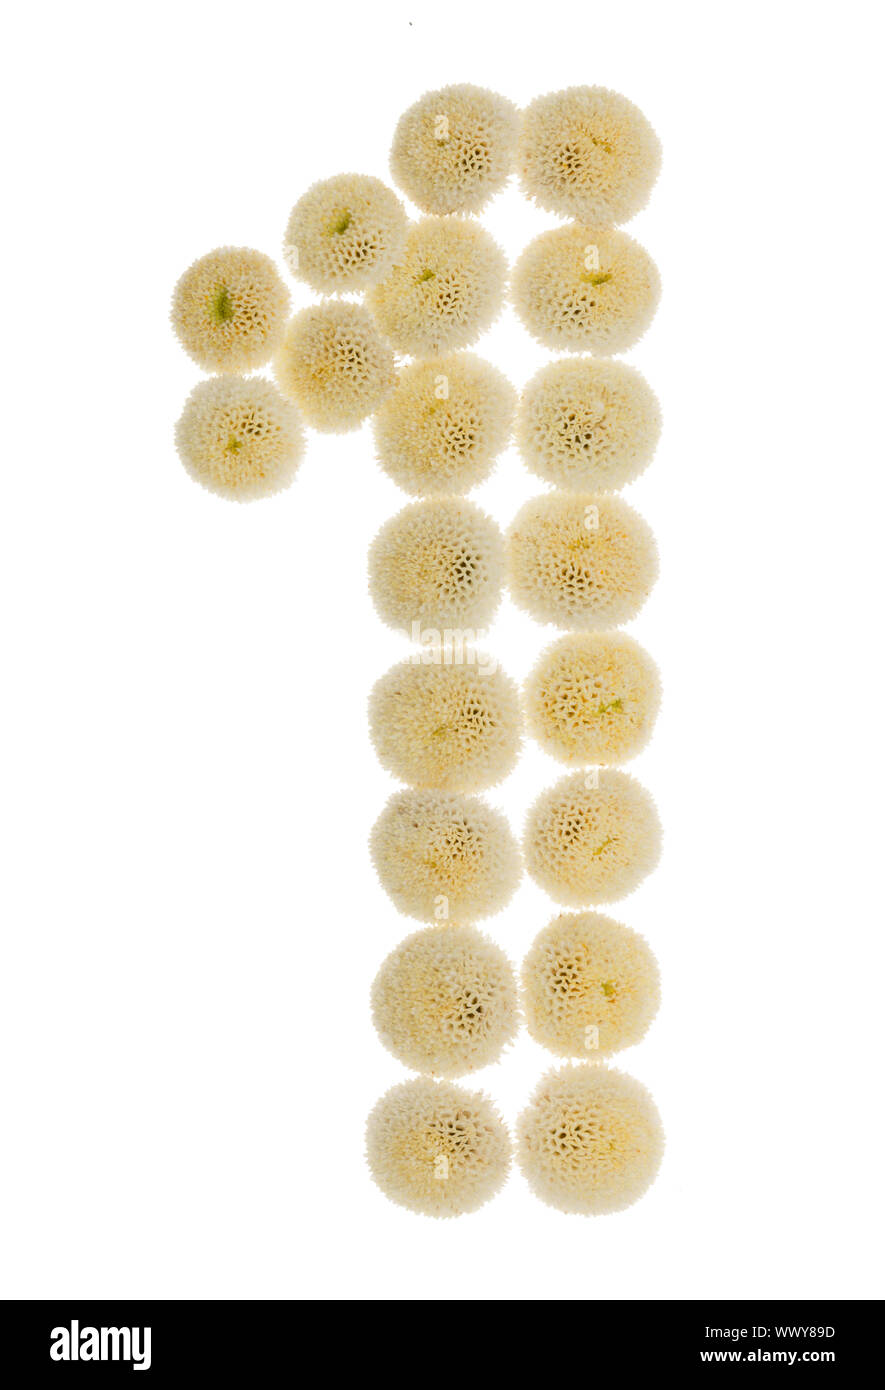 Chiffre arabe 1, l'une, à partir de crème fleurs de chrysanthème, isolé sur fond blanc Banque D'Images